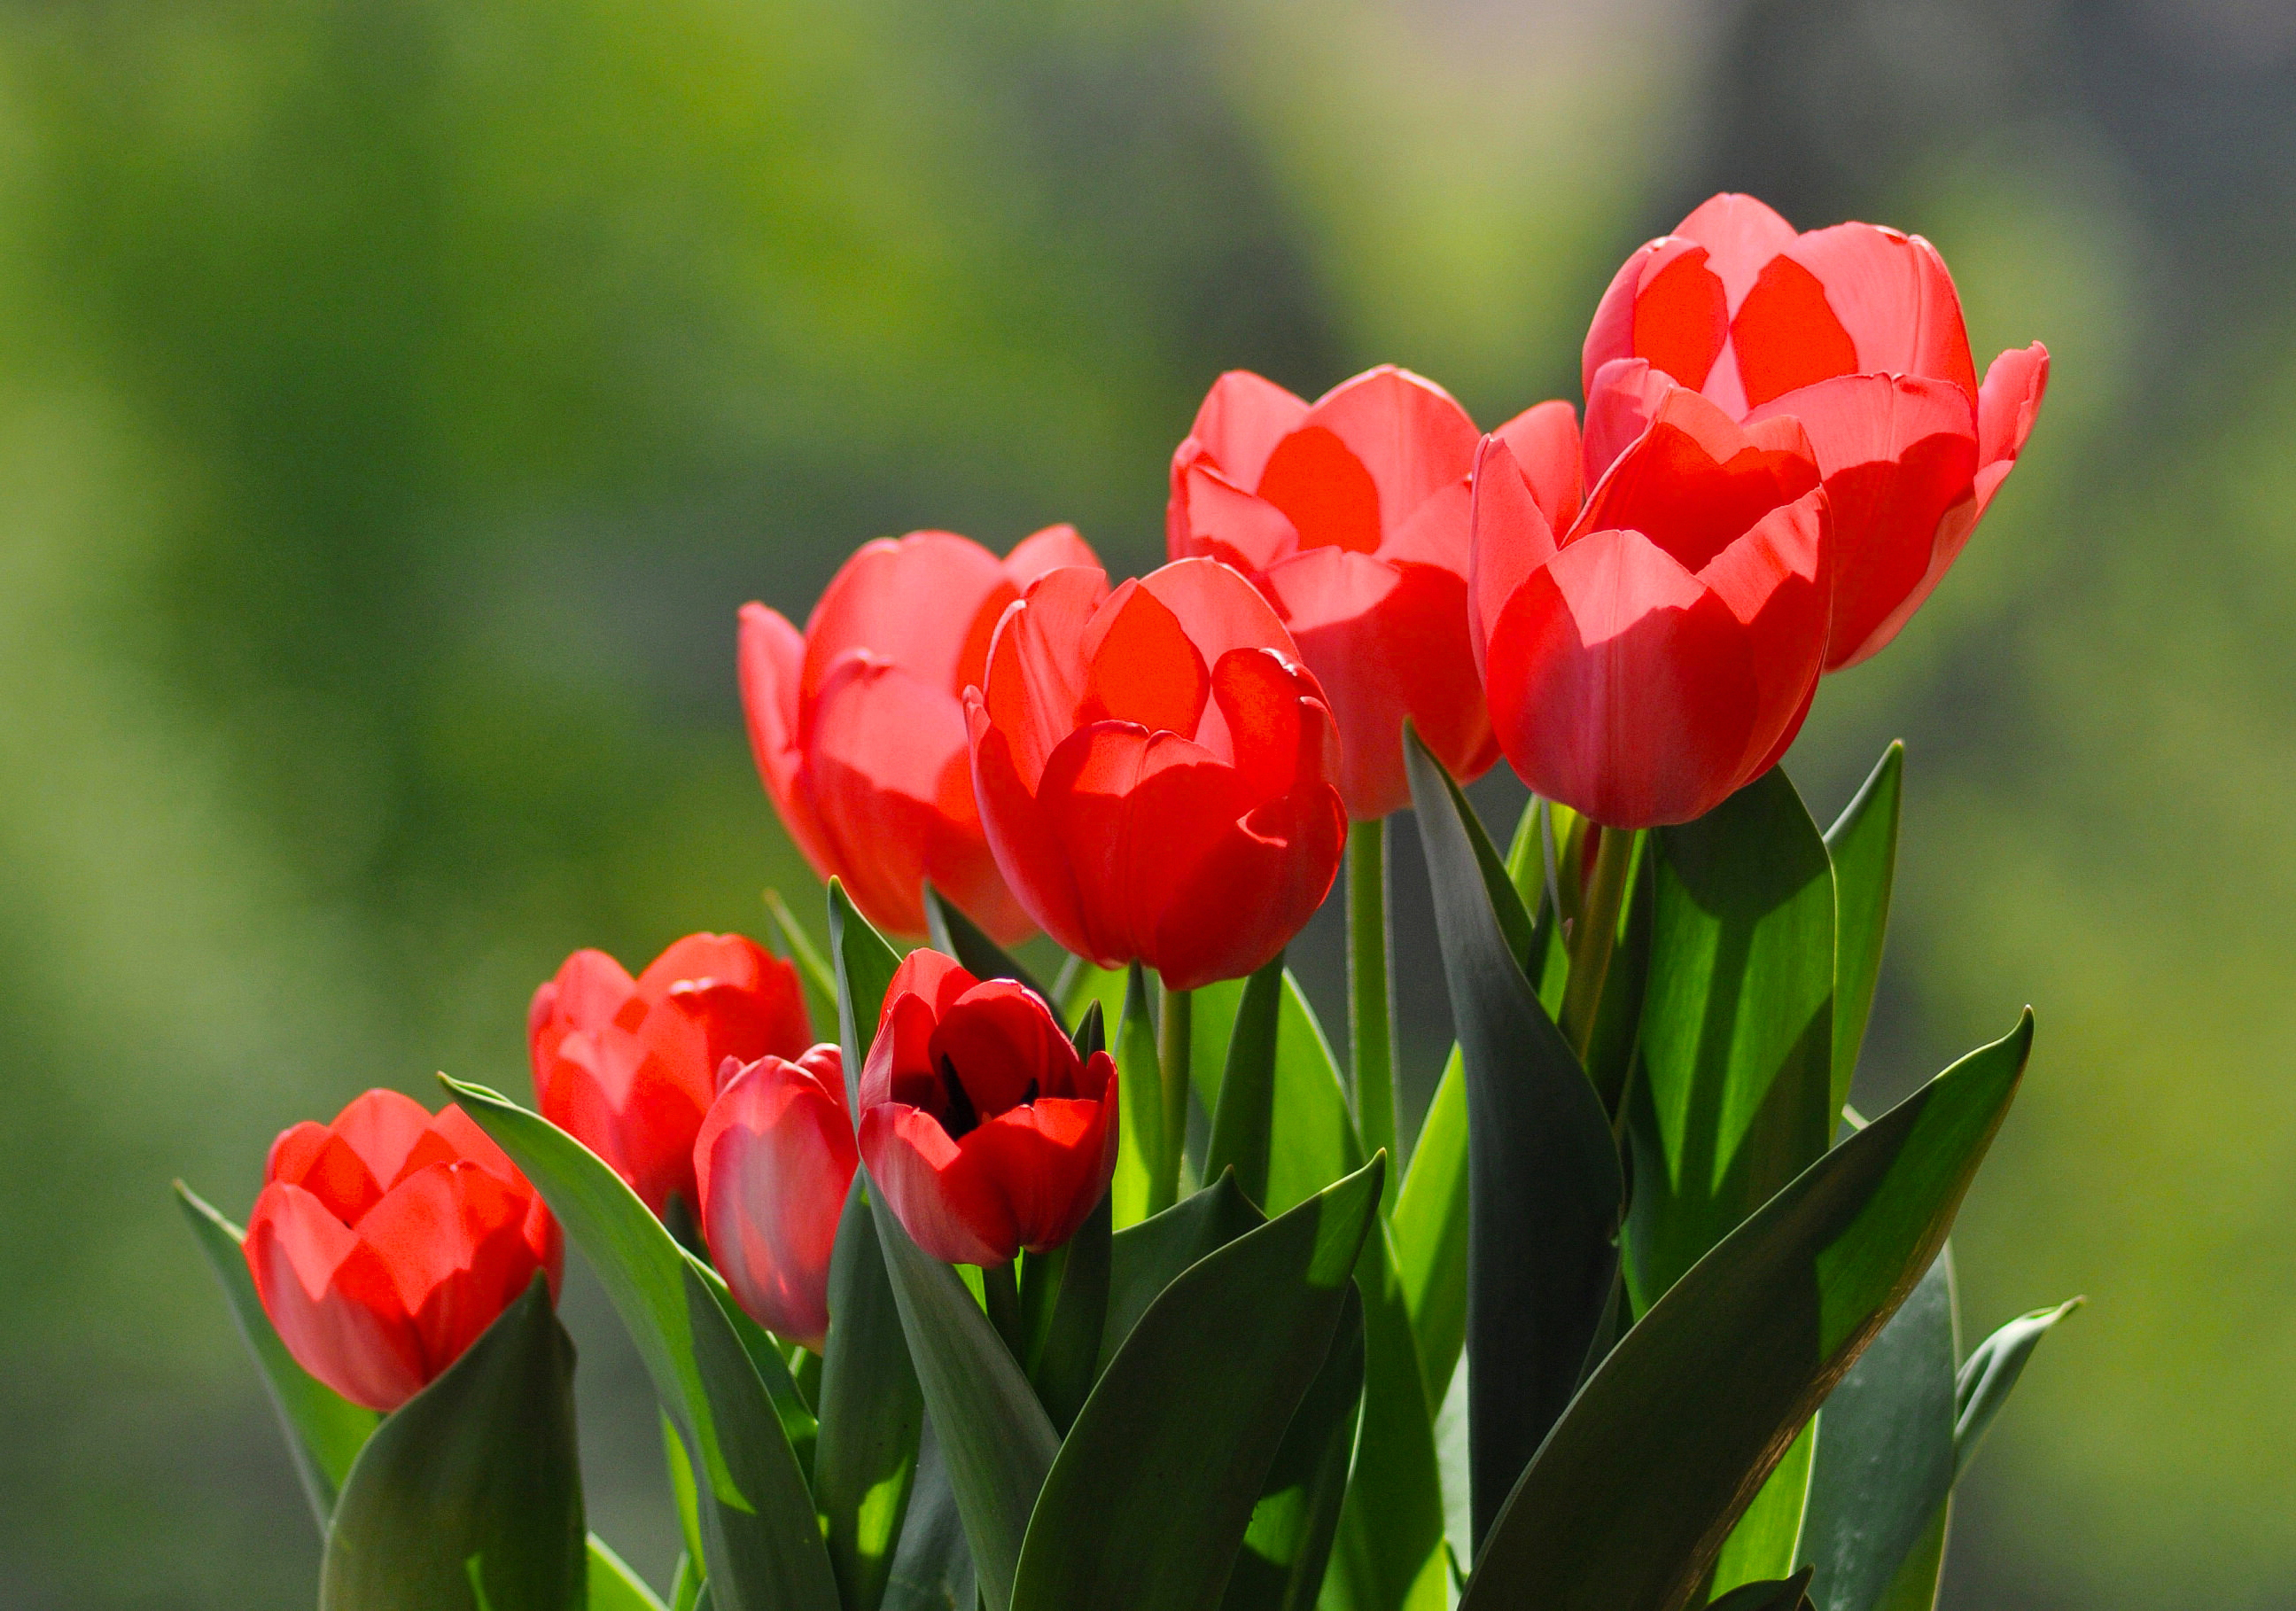 Цветы тюльпаны красные